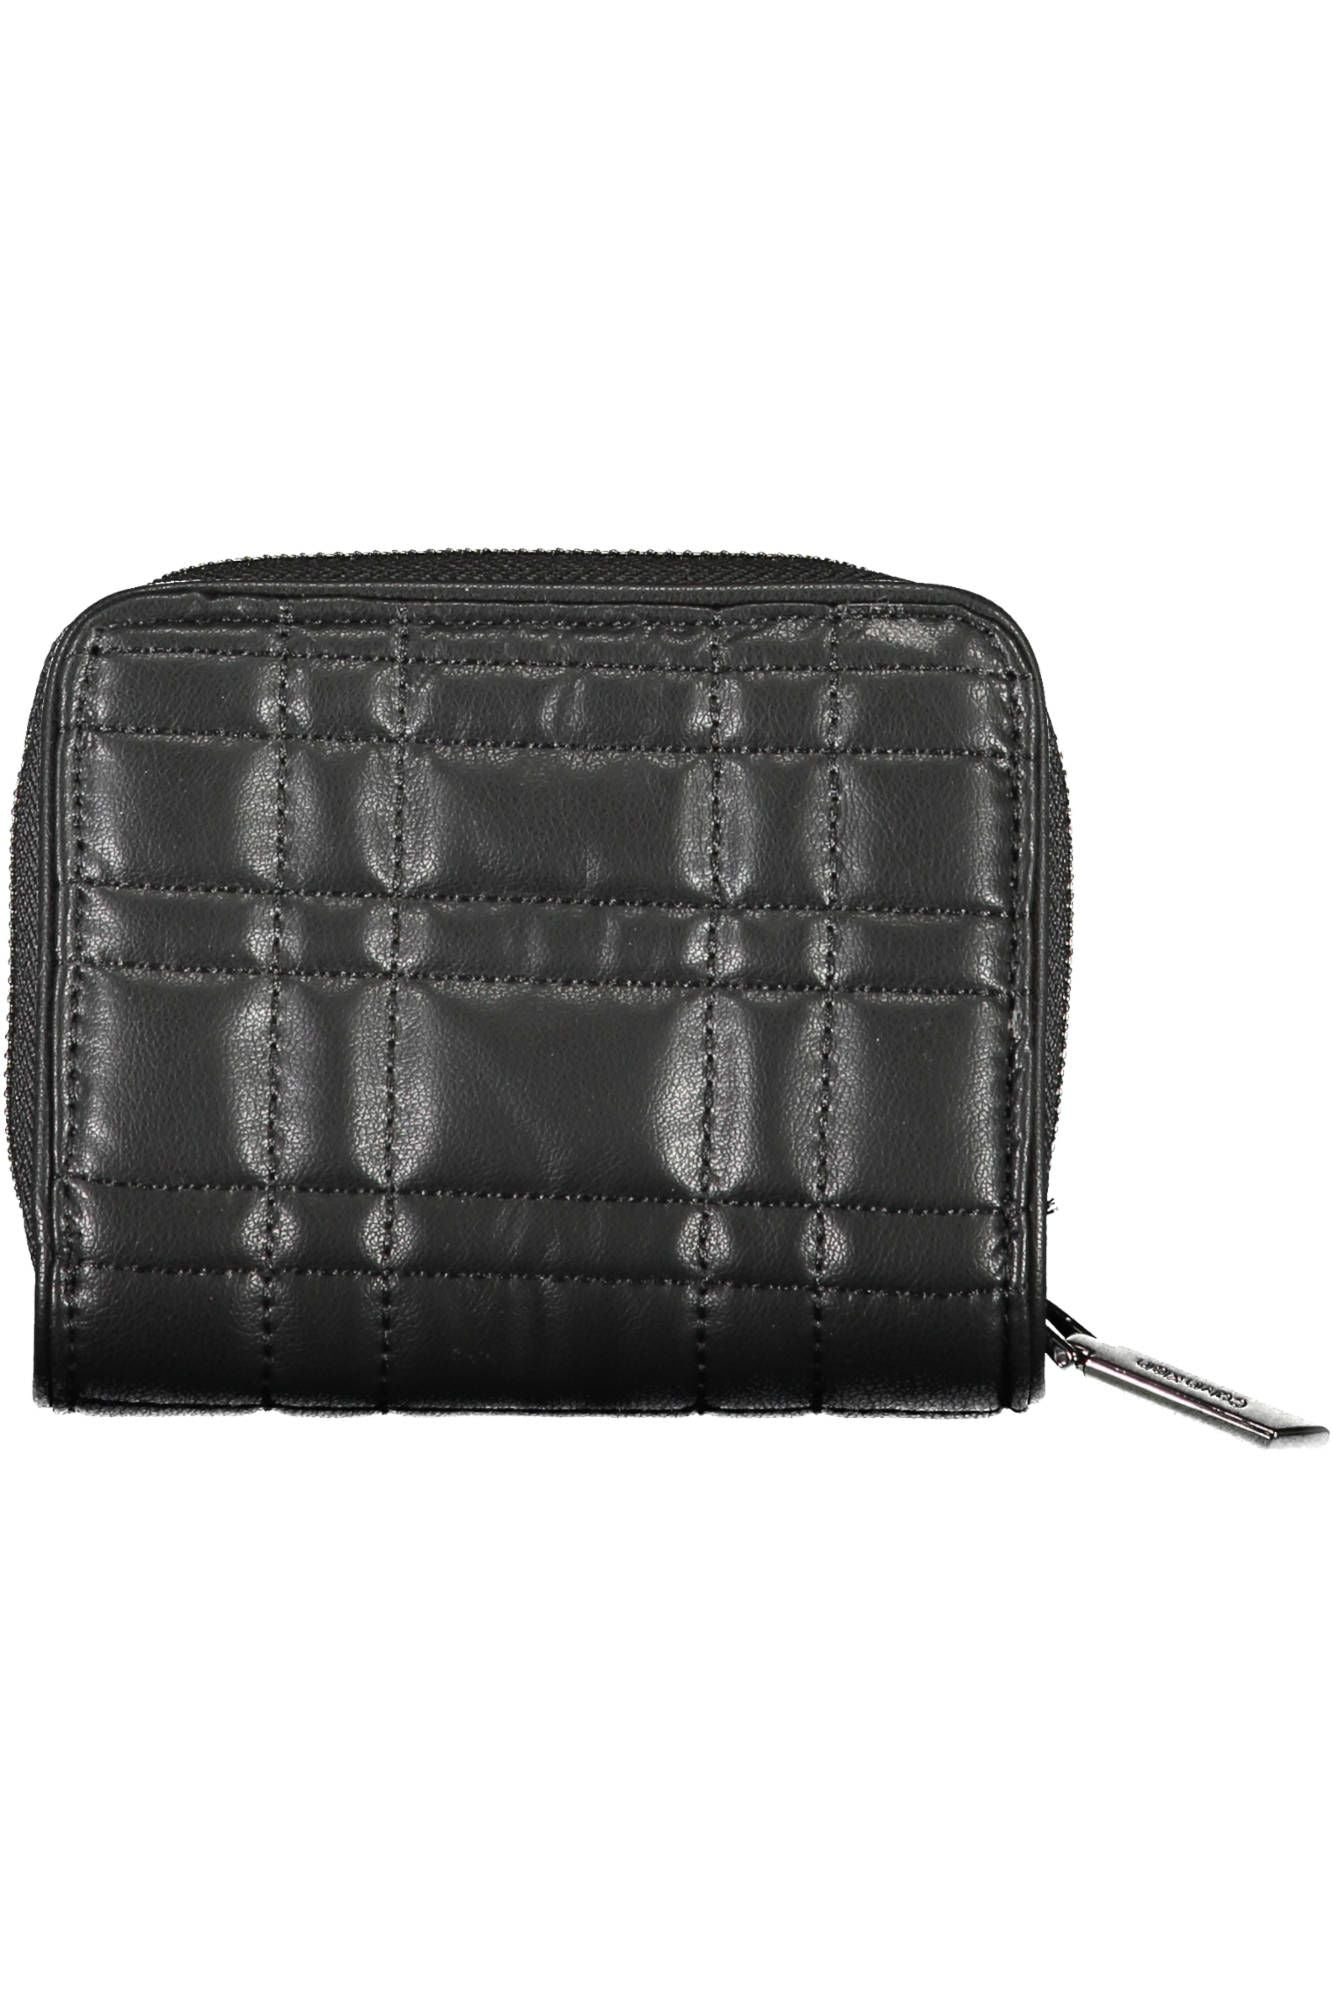 Sleek RFID-Blocking Zip Wallet in Classic Black